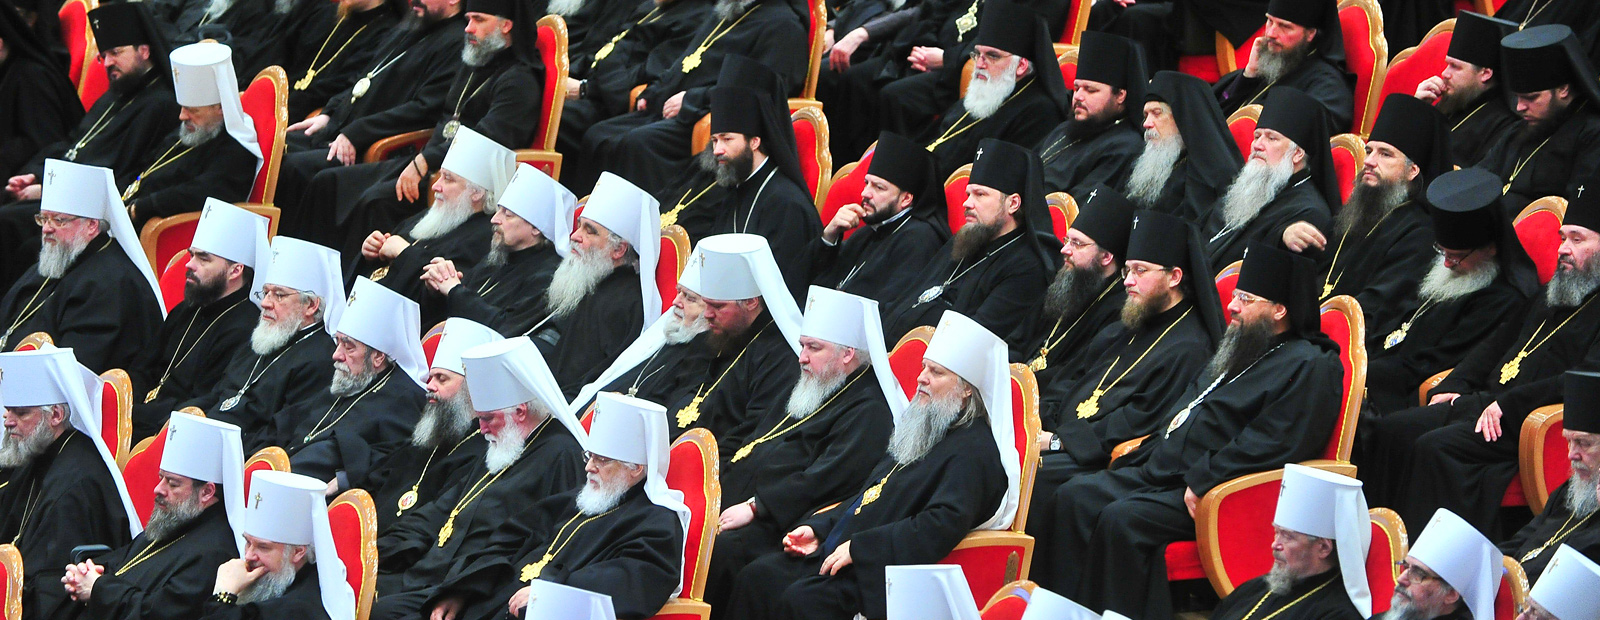 Есть ли раскол в Русской Православной Церкви?